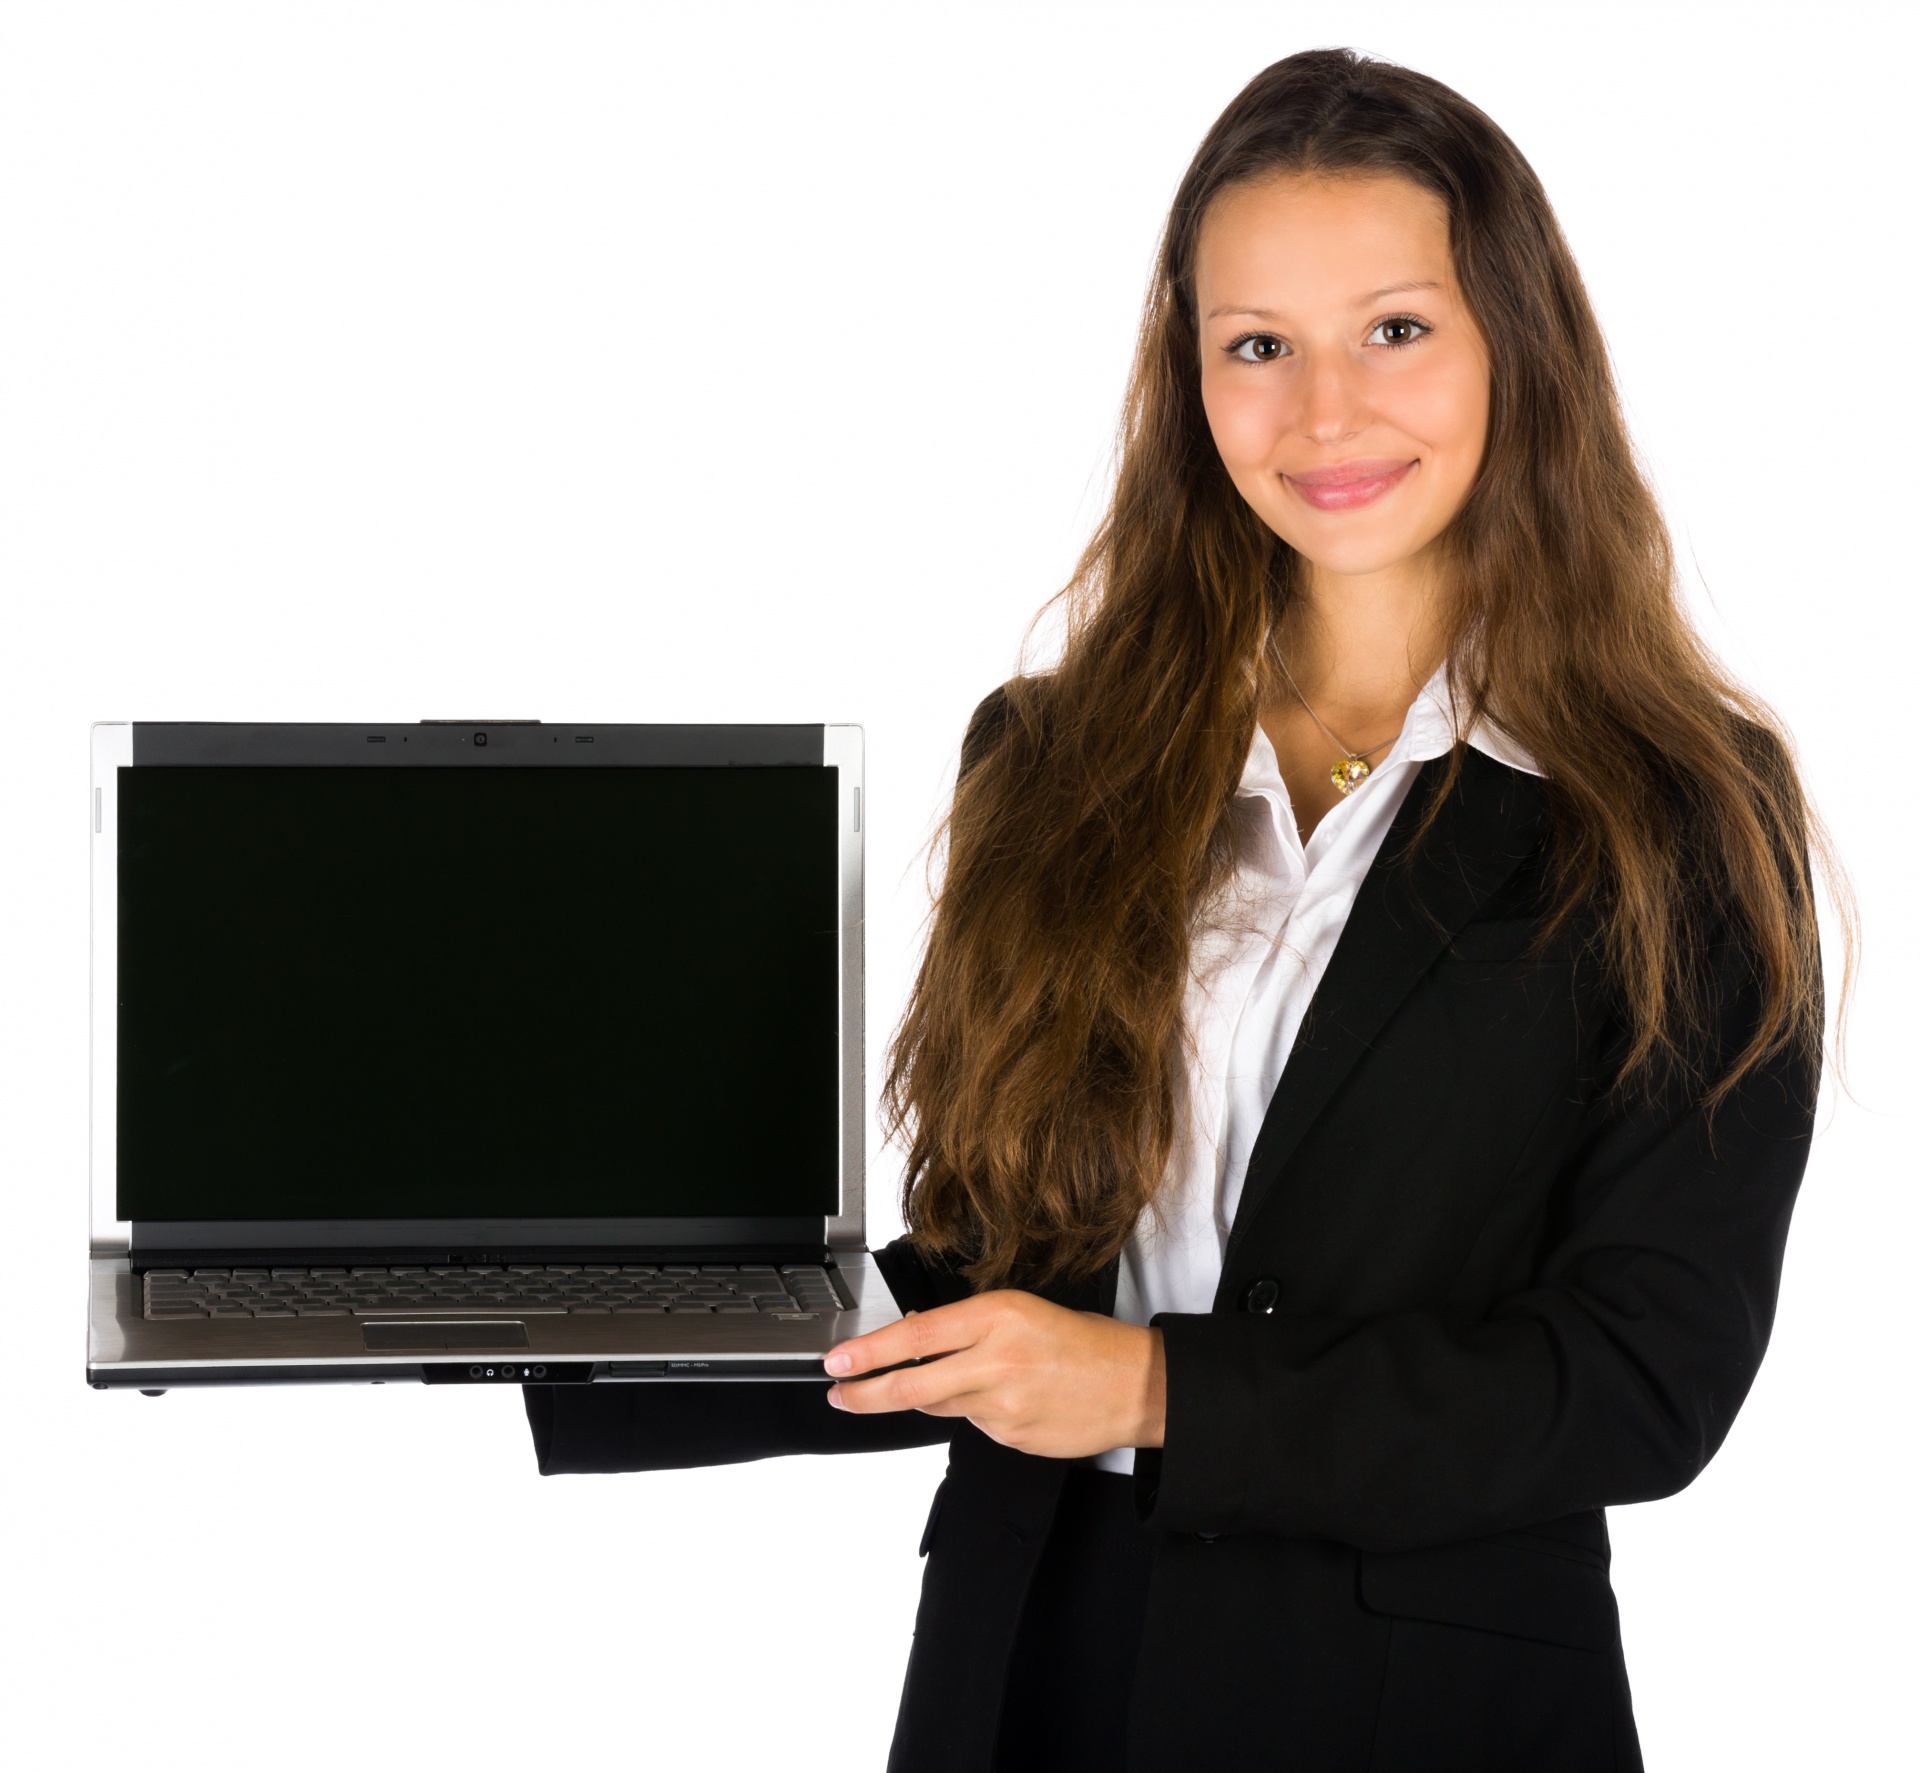 Geschäftsfrau mit Laptop